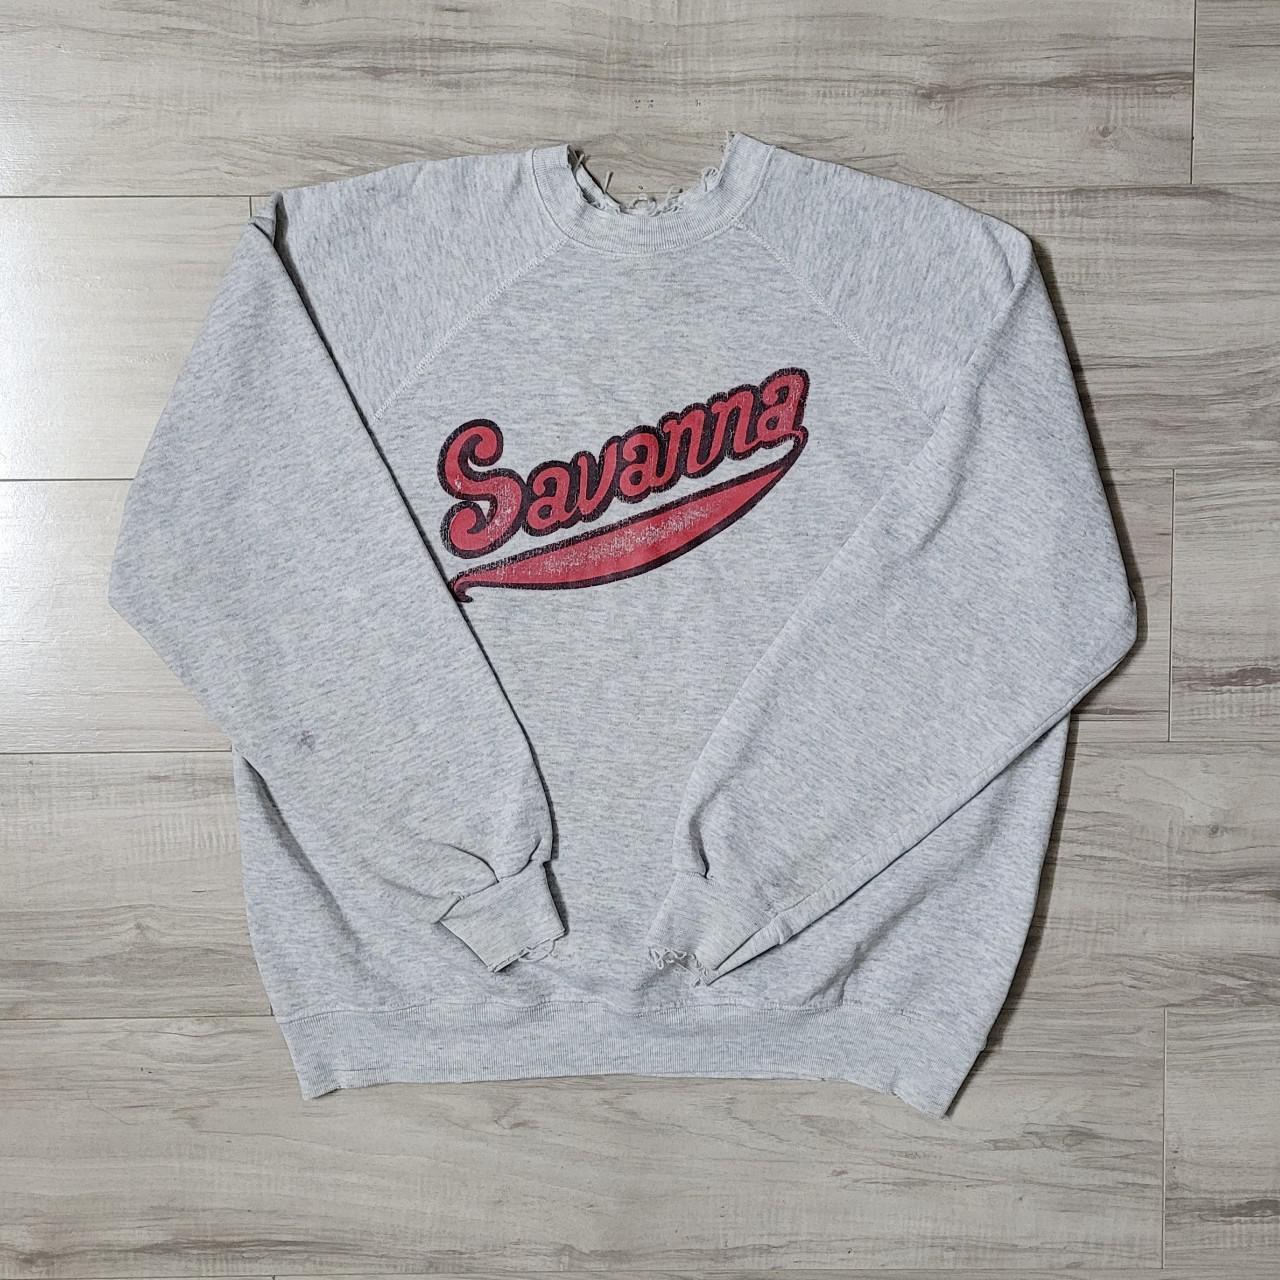 Product Image 1 - Vintage 80s Savanna sweatshirt. Distressing